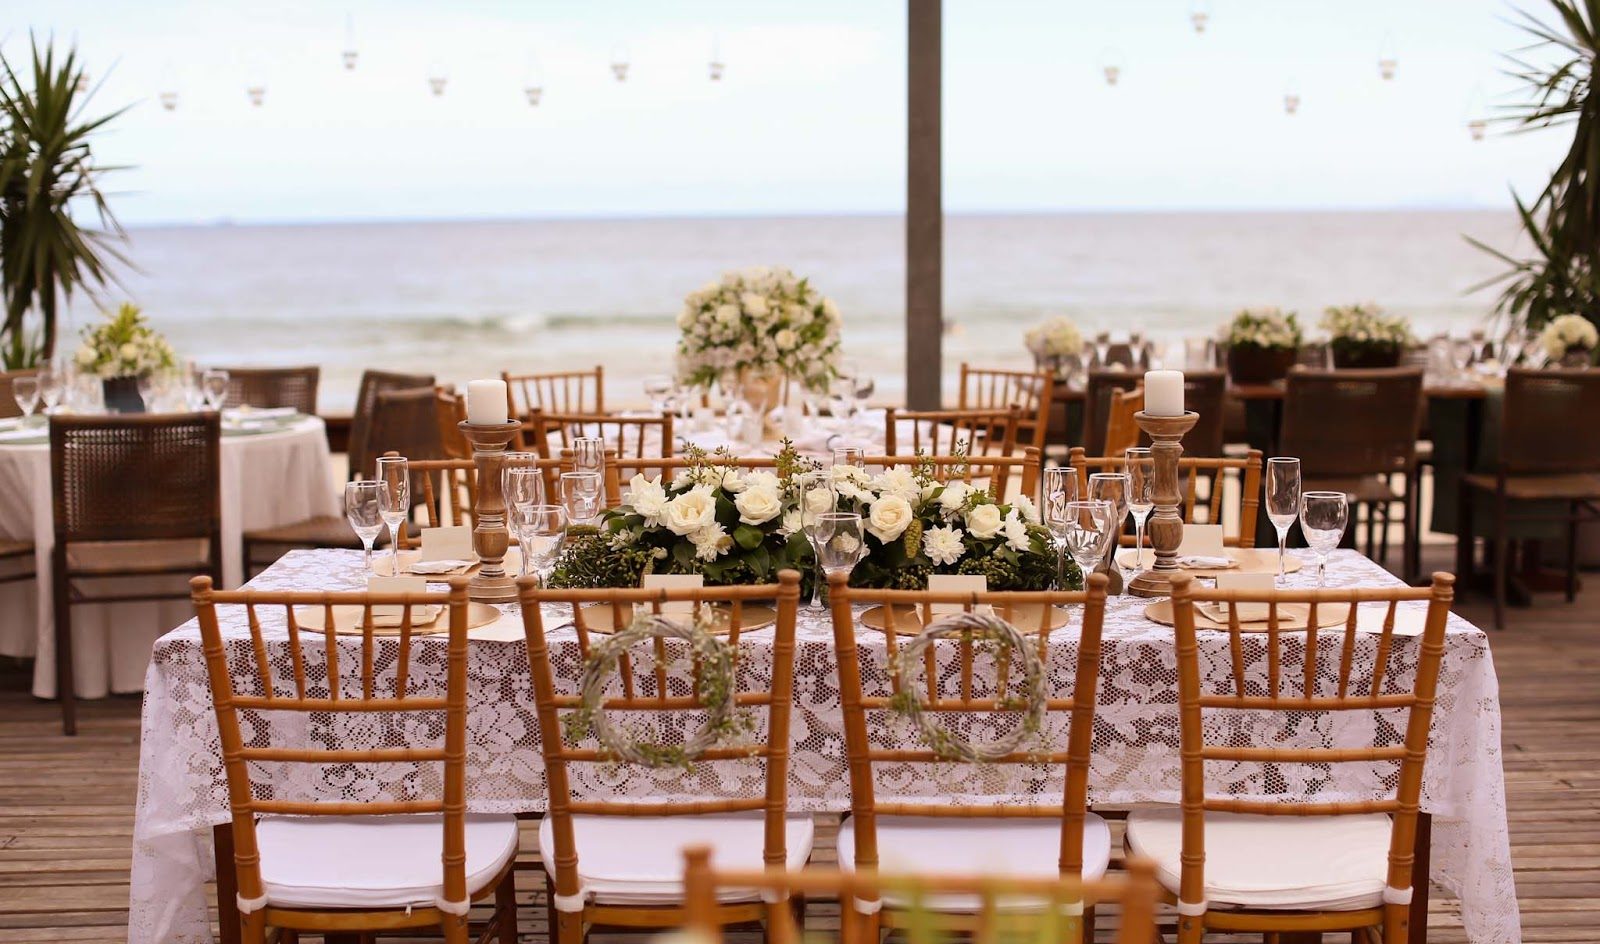 Centro de mesa para decoração de casamento: flores brancas